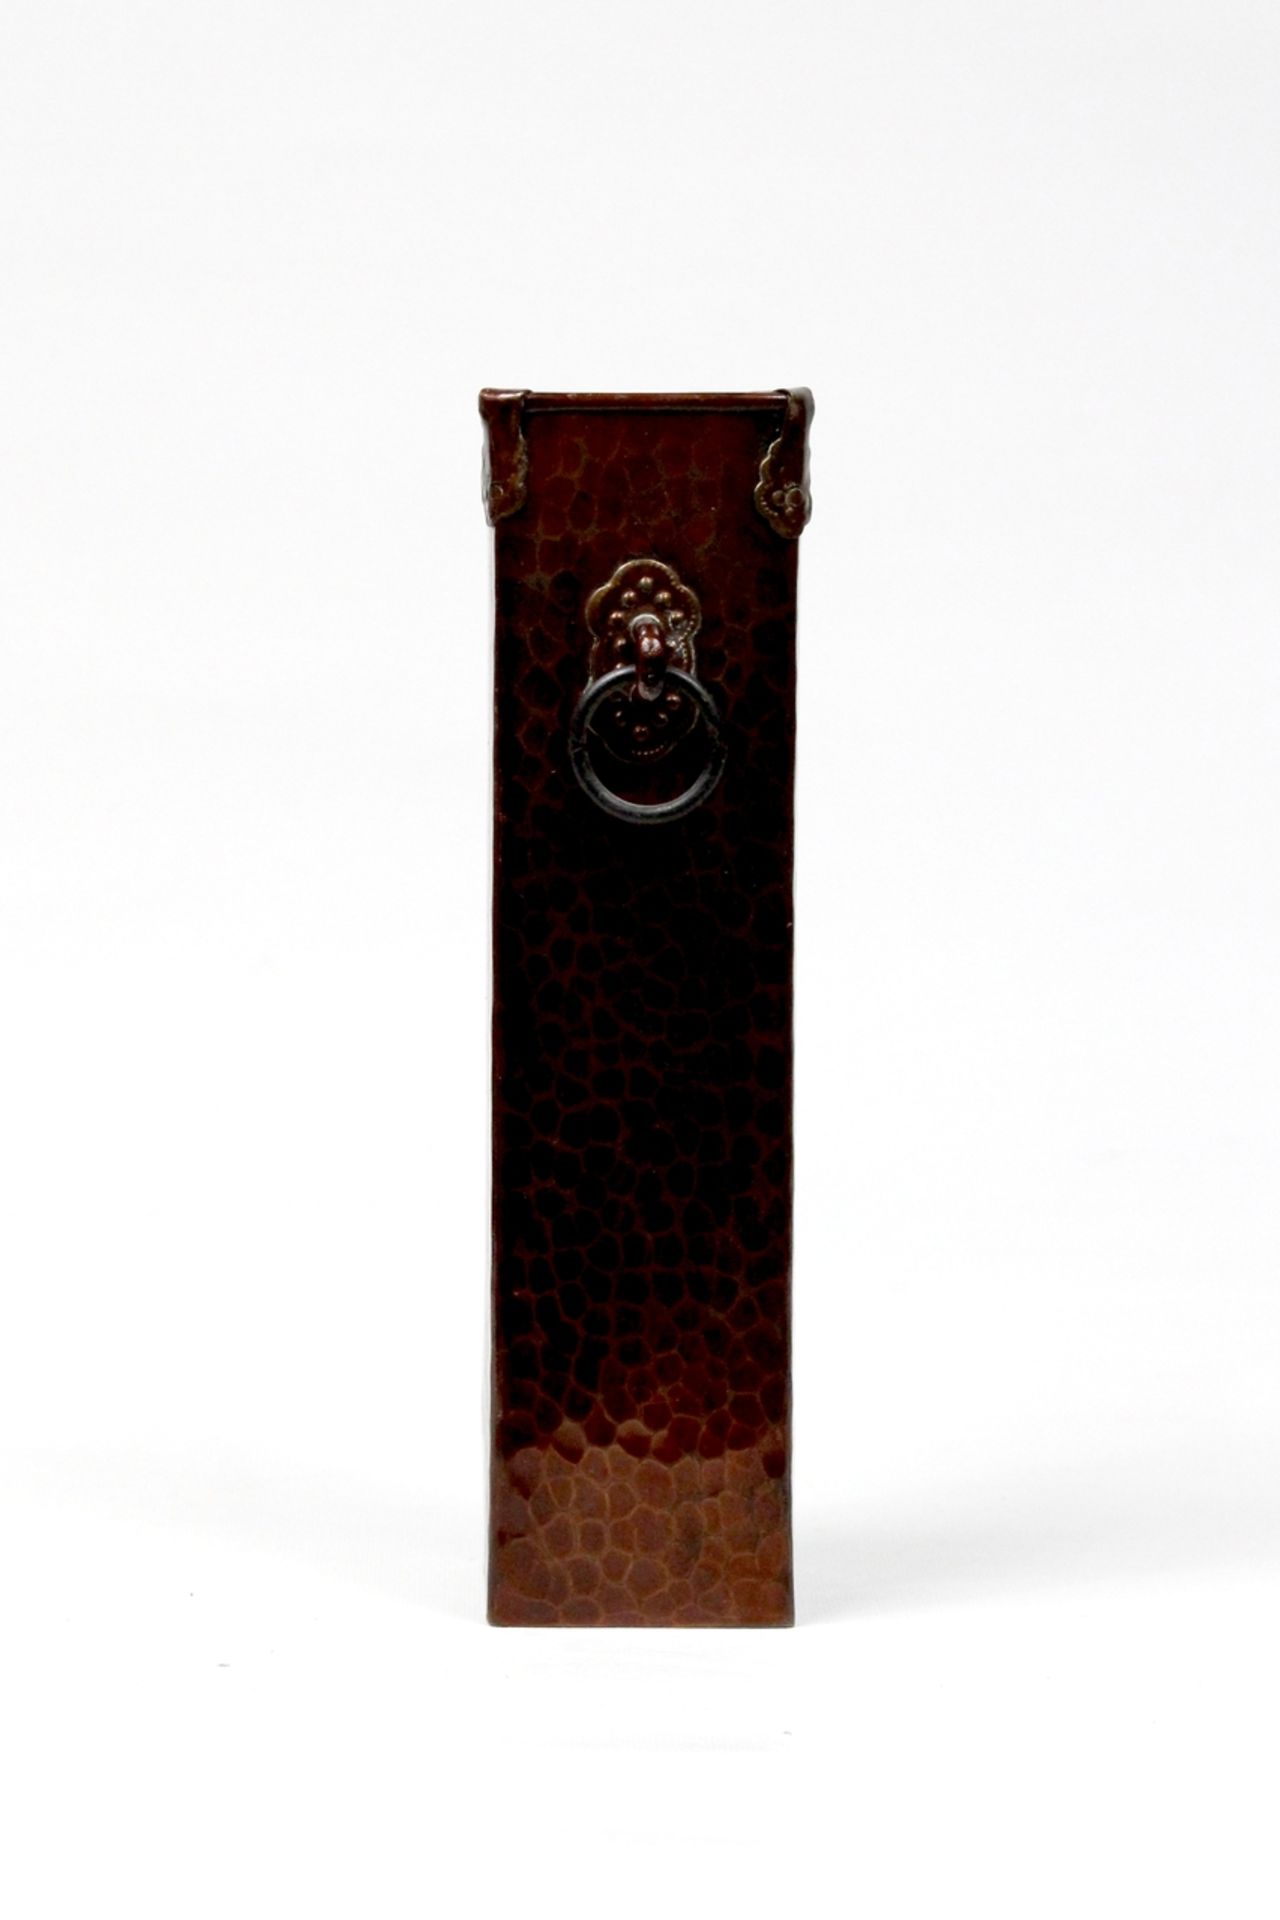 Japan Pinselhalter aus gehämmertem Kupfer in Schlangenhautoptik, Meiji Periode 19.Jhdt. - Bild 2 aus 3